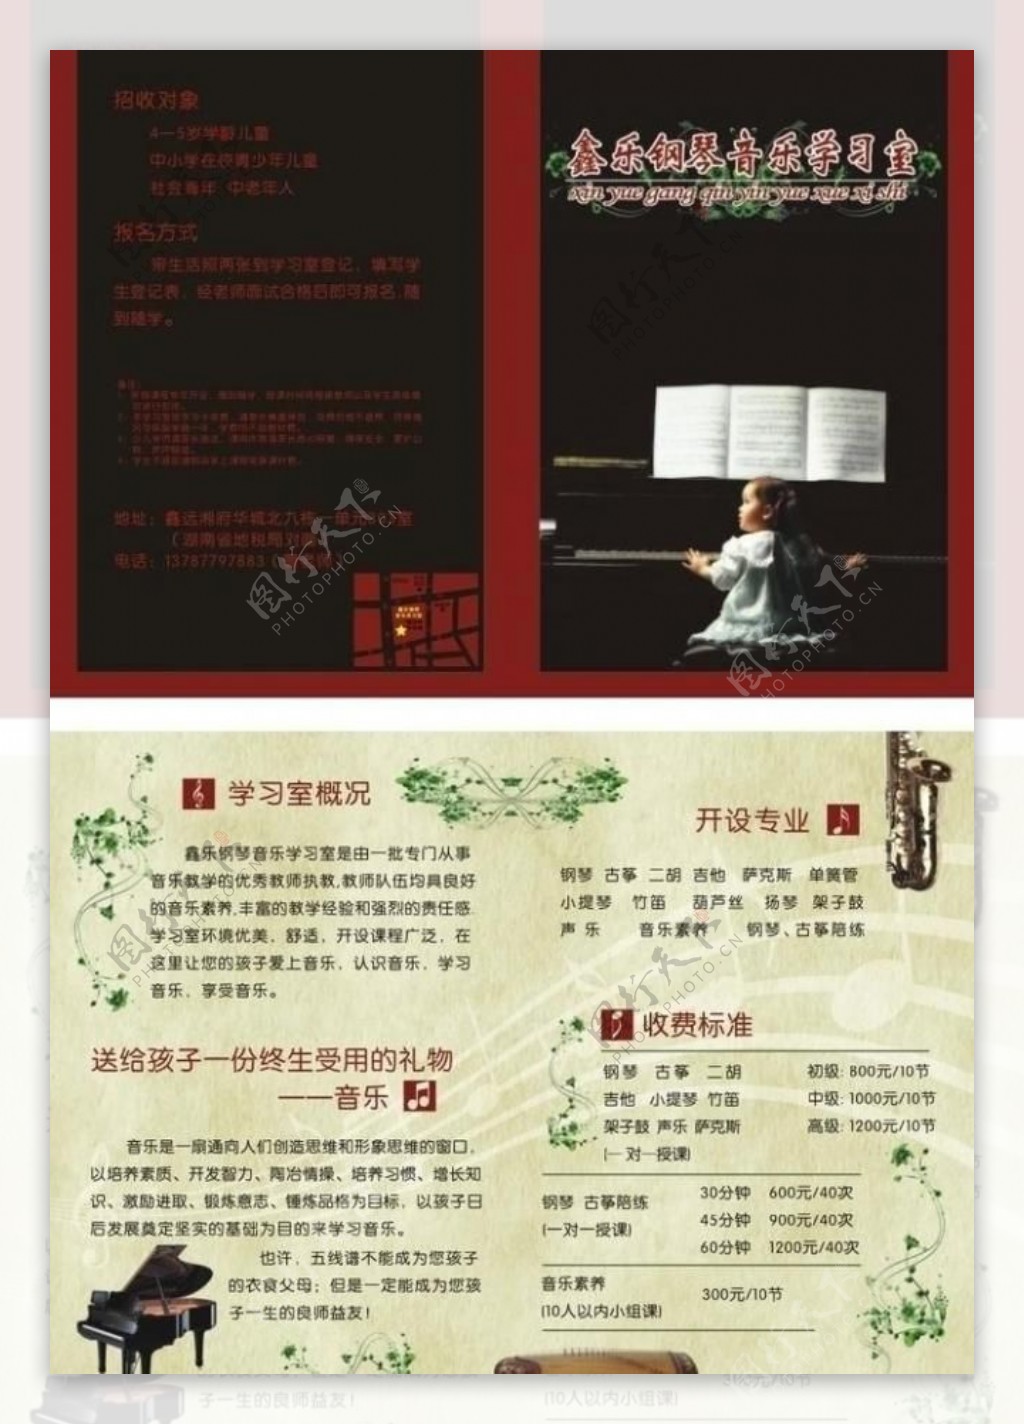 鑫乐钢琴音乐学习室图片